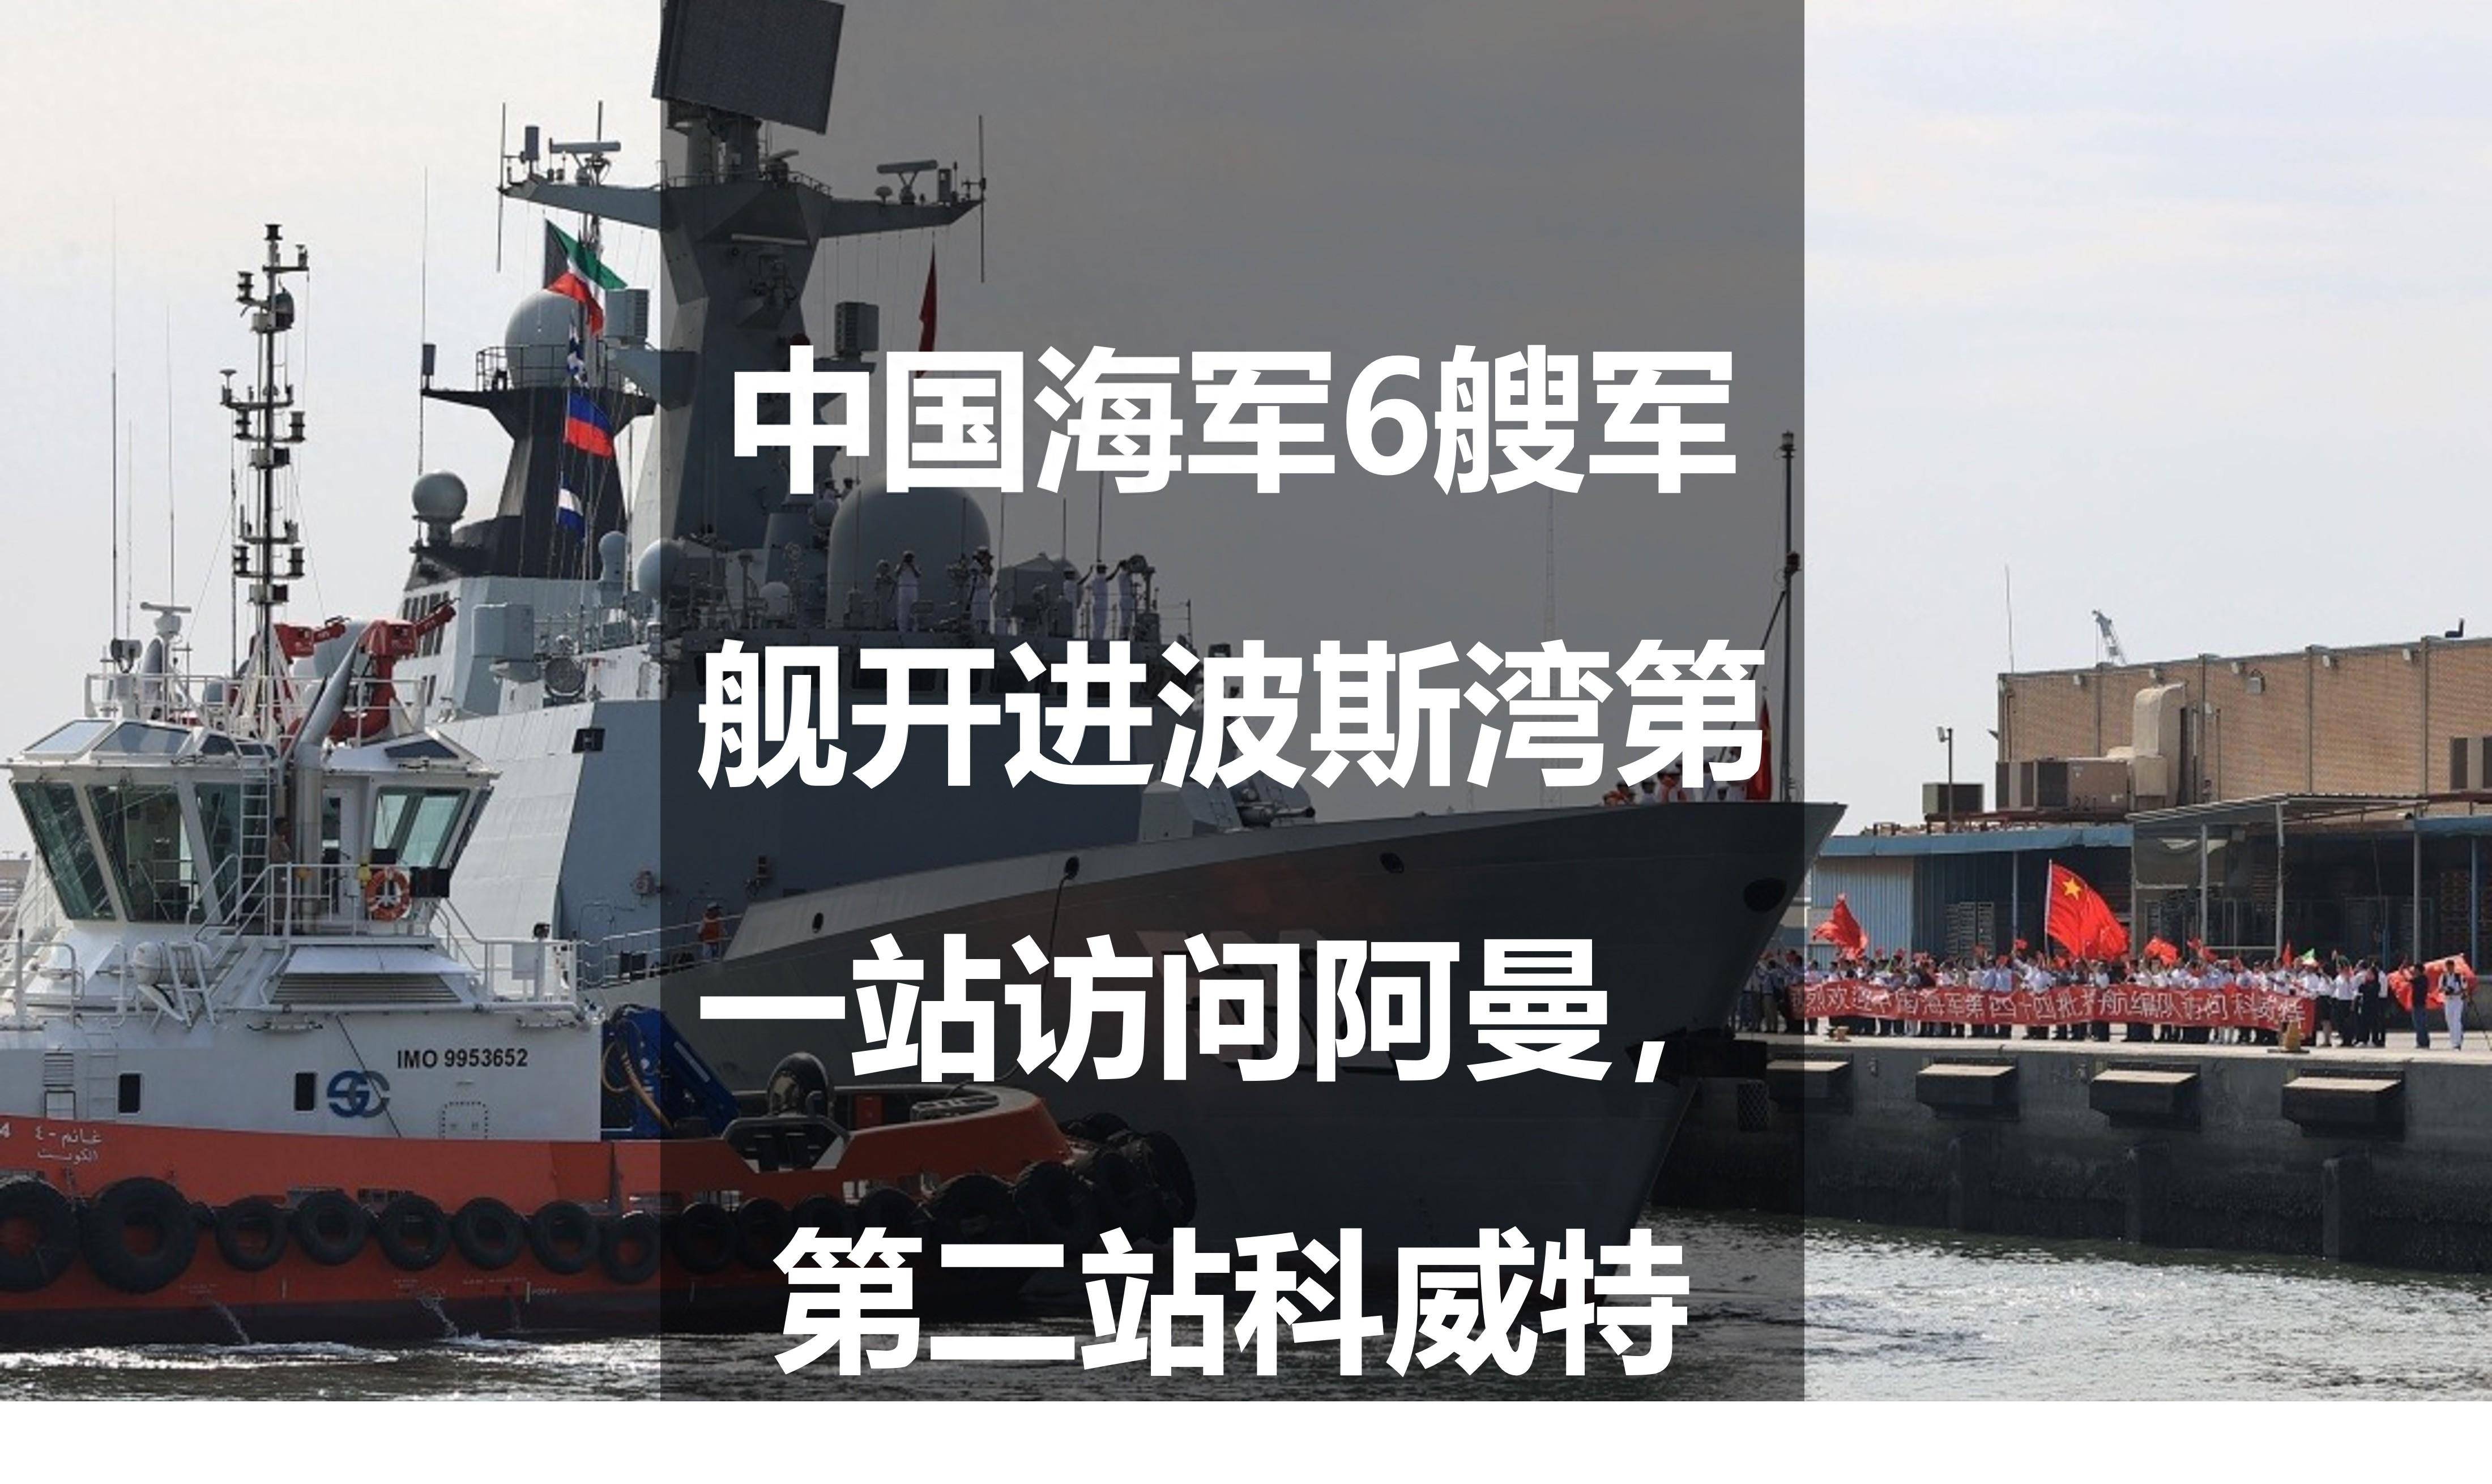 中国海军6艘军舰开进波斯湾:第一站访问阿曼,第二站科威特